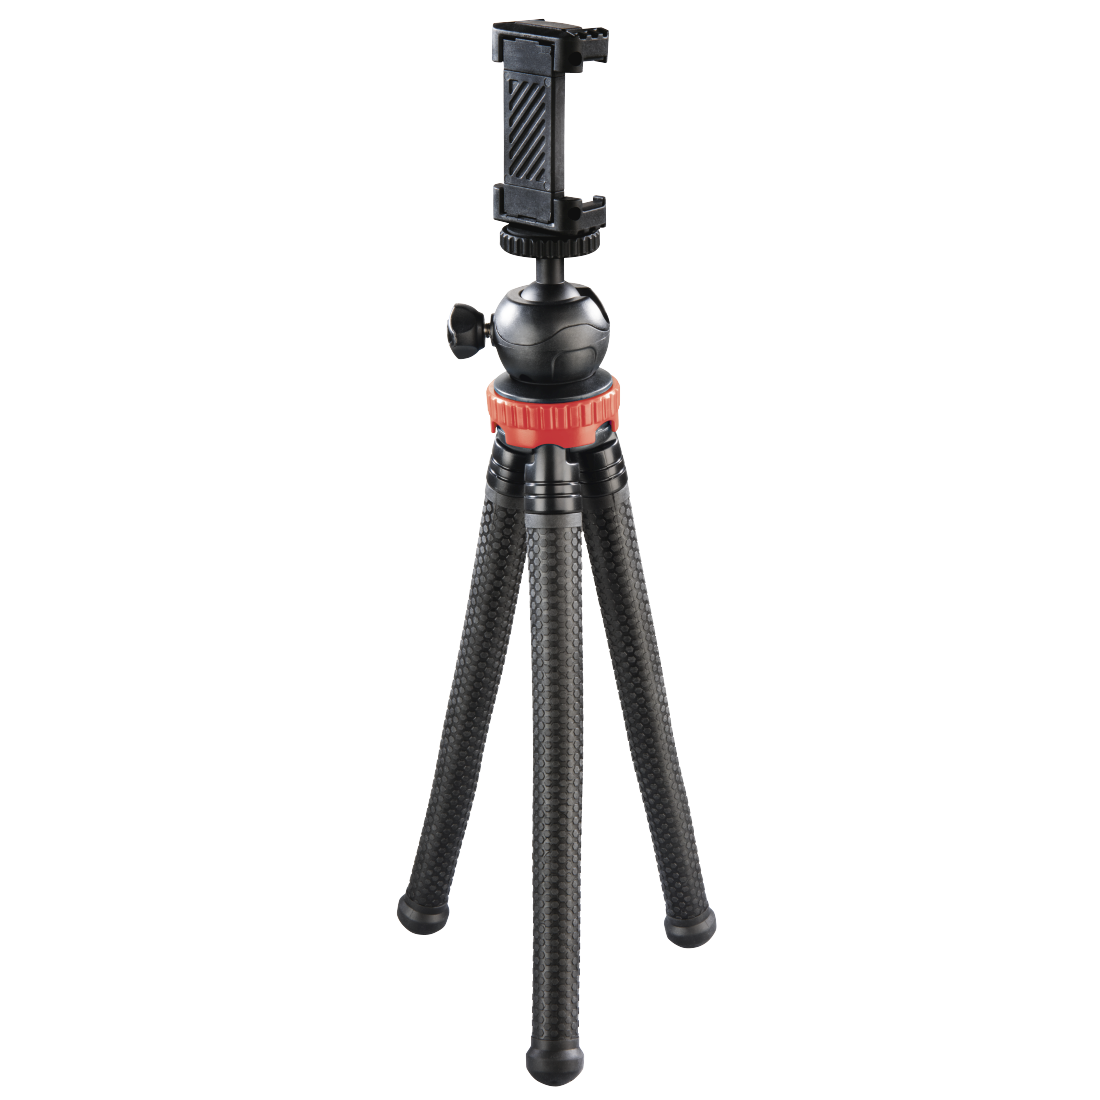 Stativ "FlexPro" für Smartphone, GoPro und Fotokameras, 27 cm, Rot | Hama